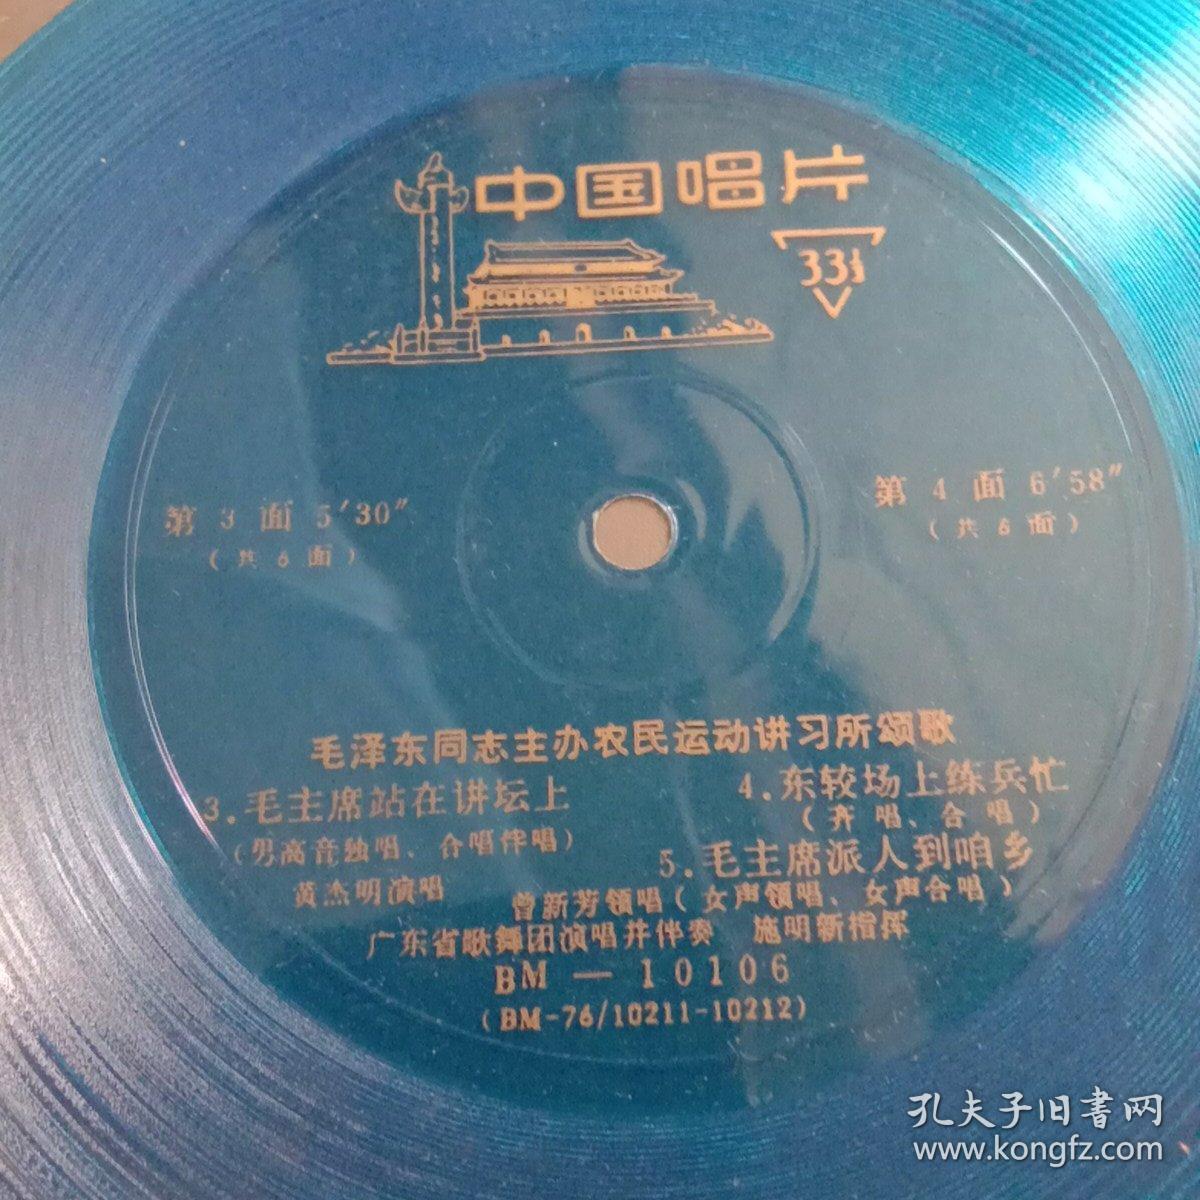 小薄膜唱片:毛泽东同志主办农民运动讲习所颂歌。三张6面全。